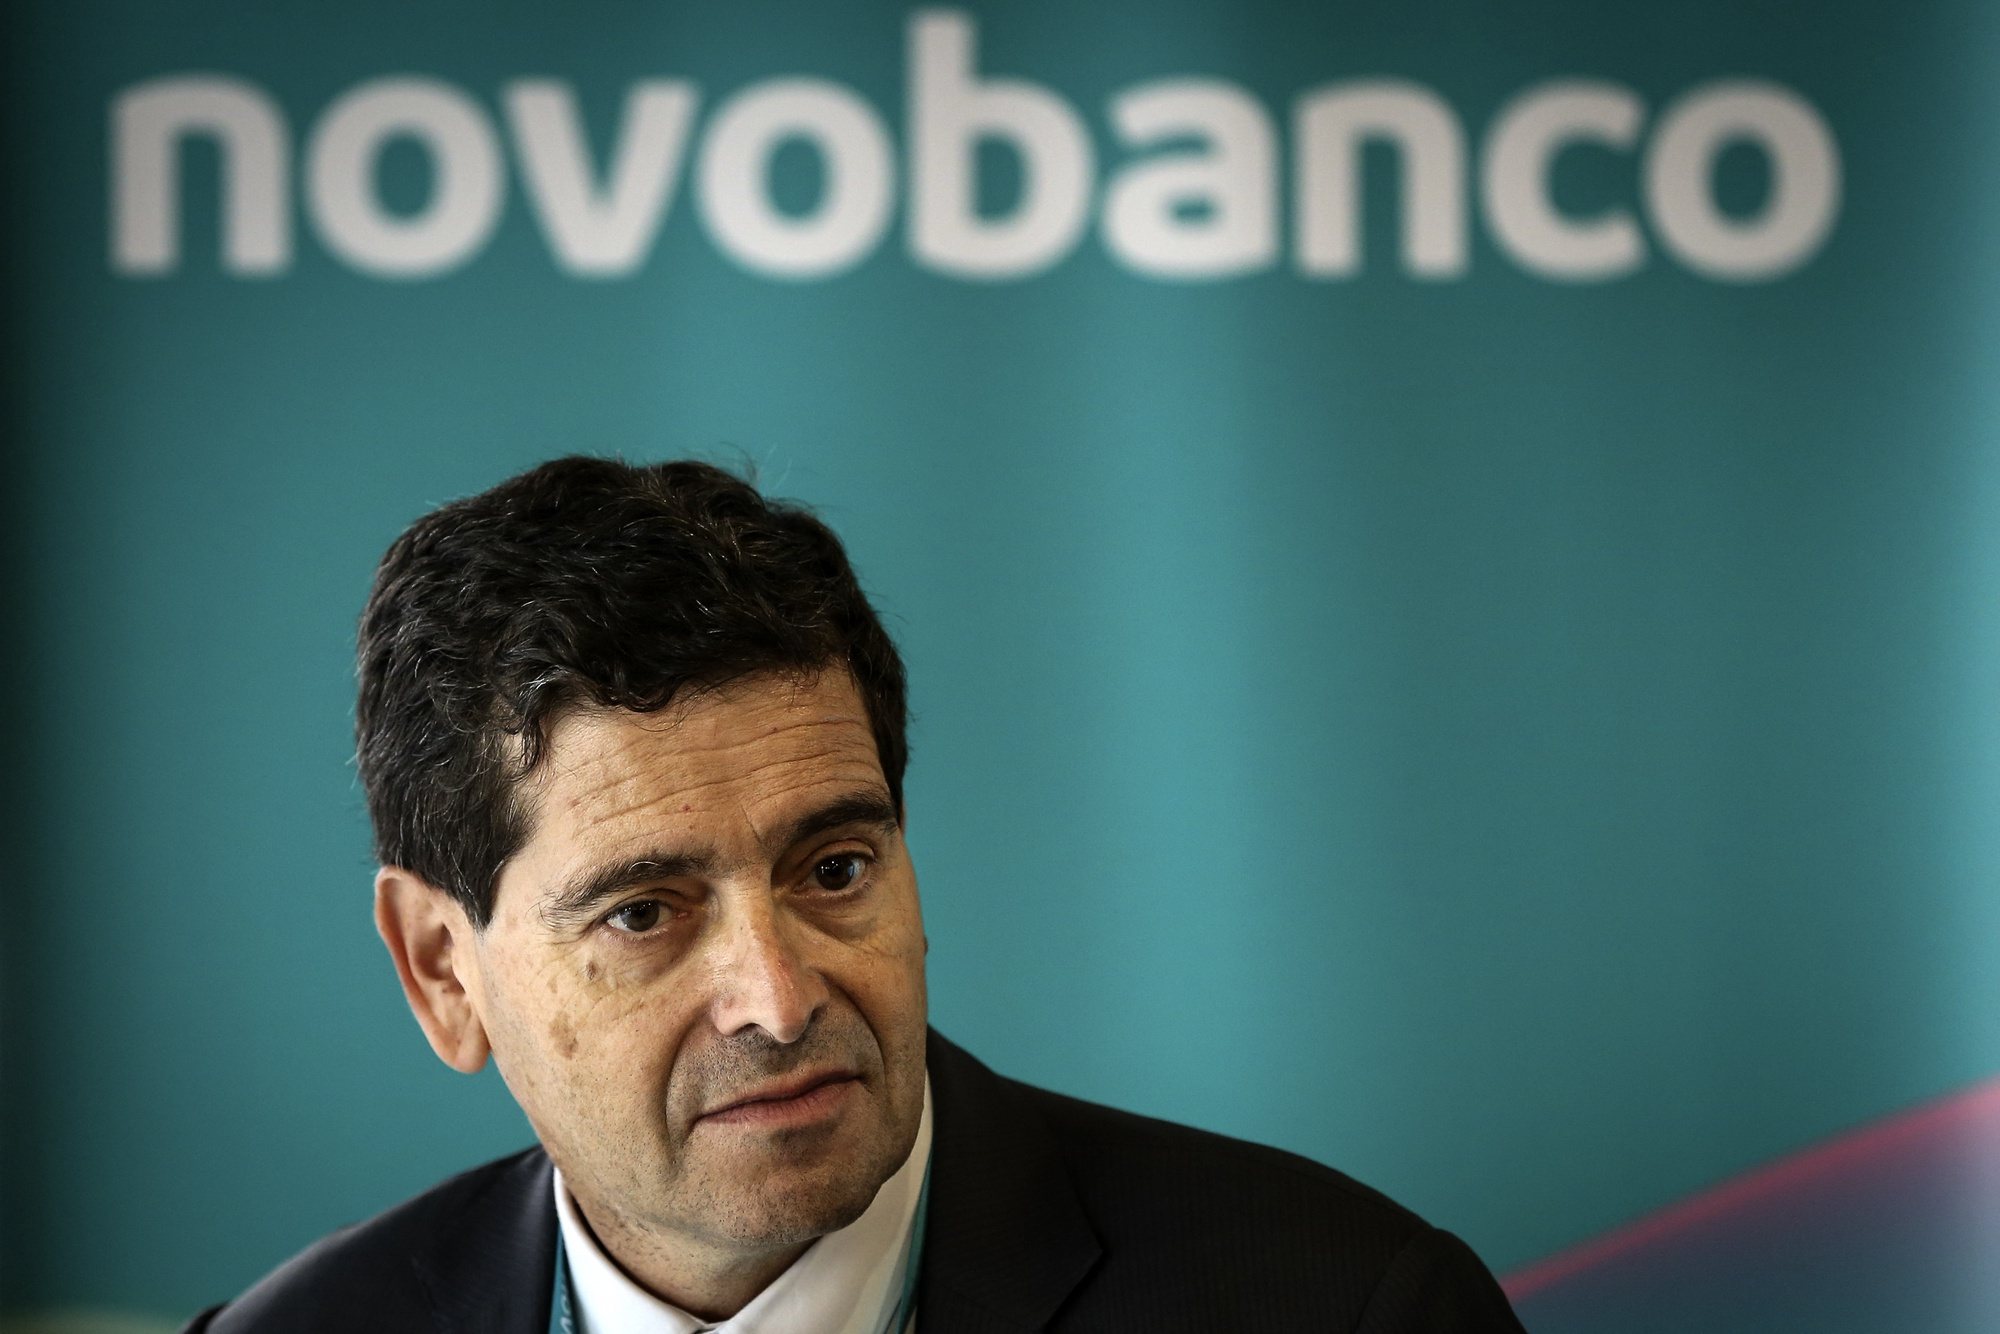 O presidente executivo do Novo Banco, António Ramalho, durante a conferência de imprensa para a apresentação da nova imagem de marca do Novo Banco, em Lisboa, 25 de outubro de 2021. RODRIGO ANTUNES/LUSA